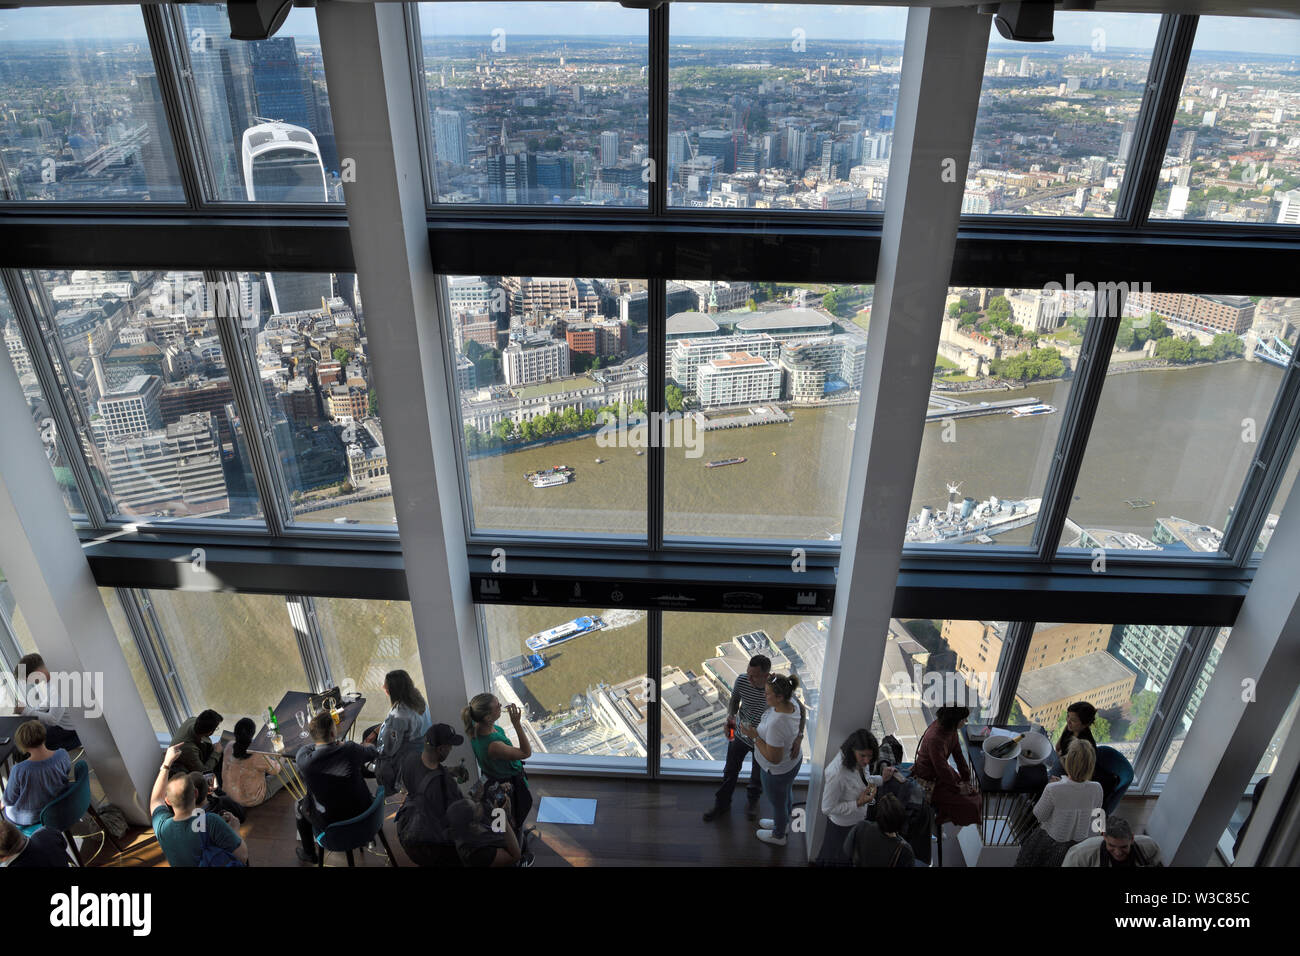 Public gallery à partir de la 72e étage de la plate-forme d'observation Shard avec windows aux vues de la rivière Thames, London England Banque D'Images